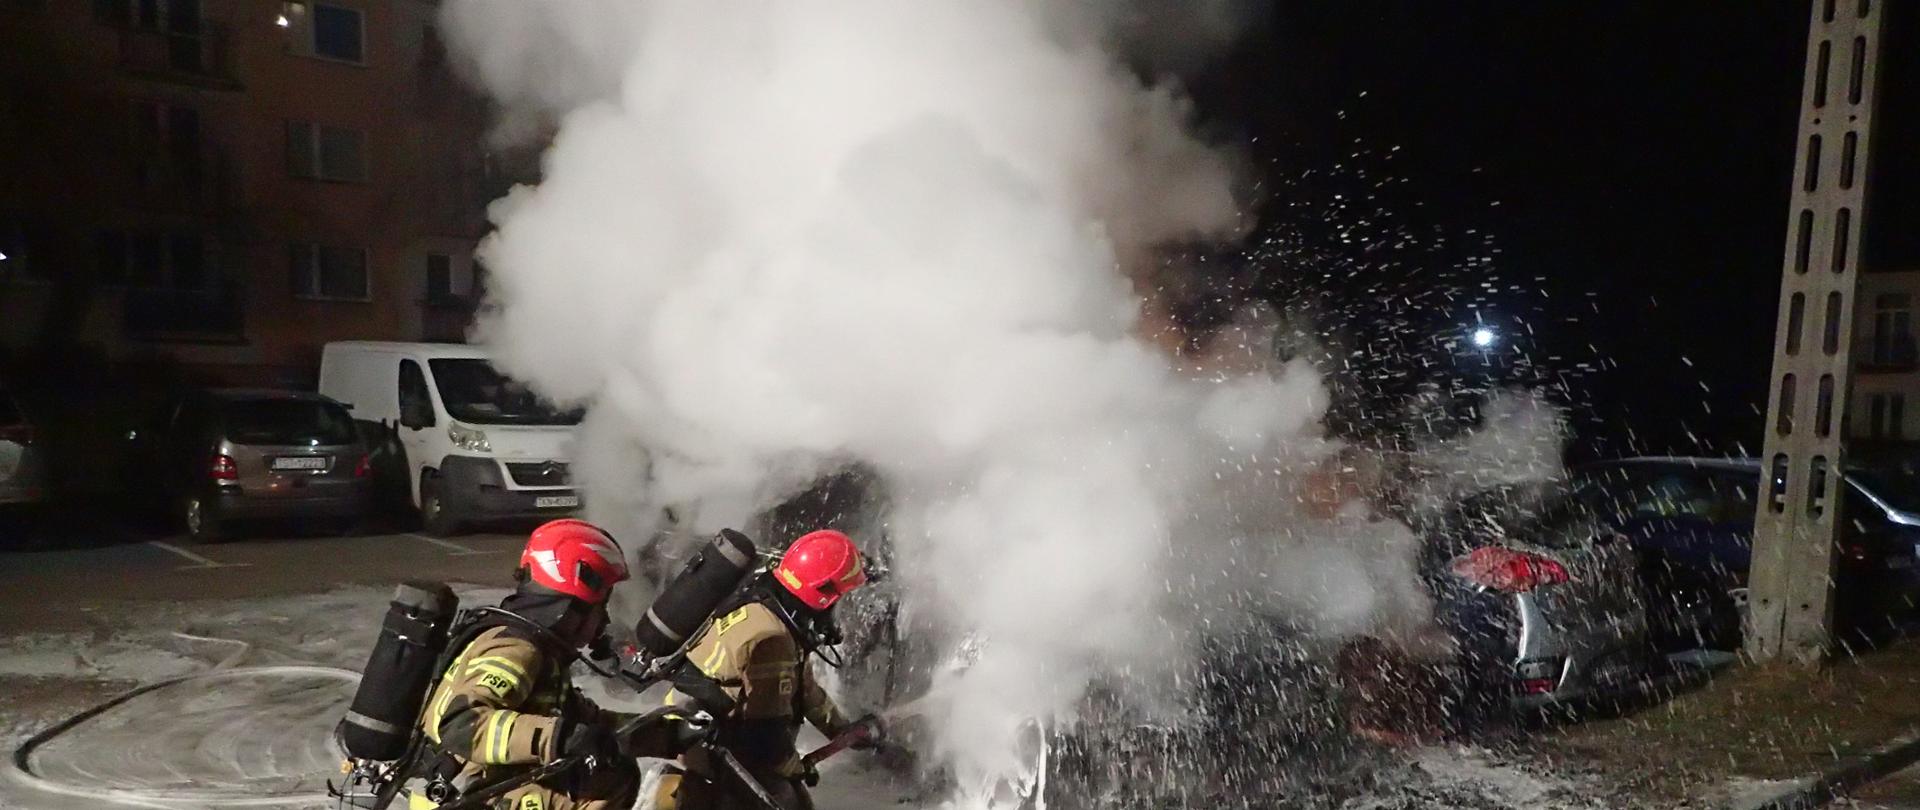 Dwóch ratowników podaje prąd piany ciężkiej na palący się samochód, dużo dymu pora nocna